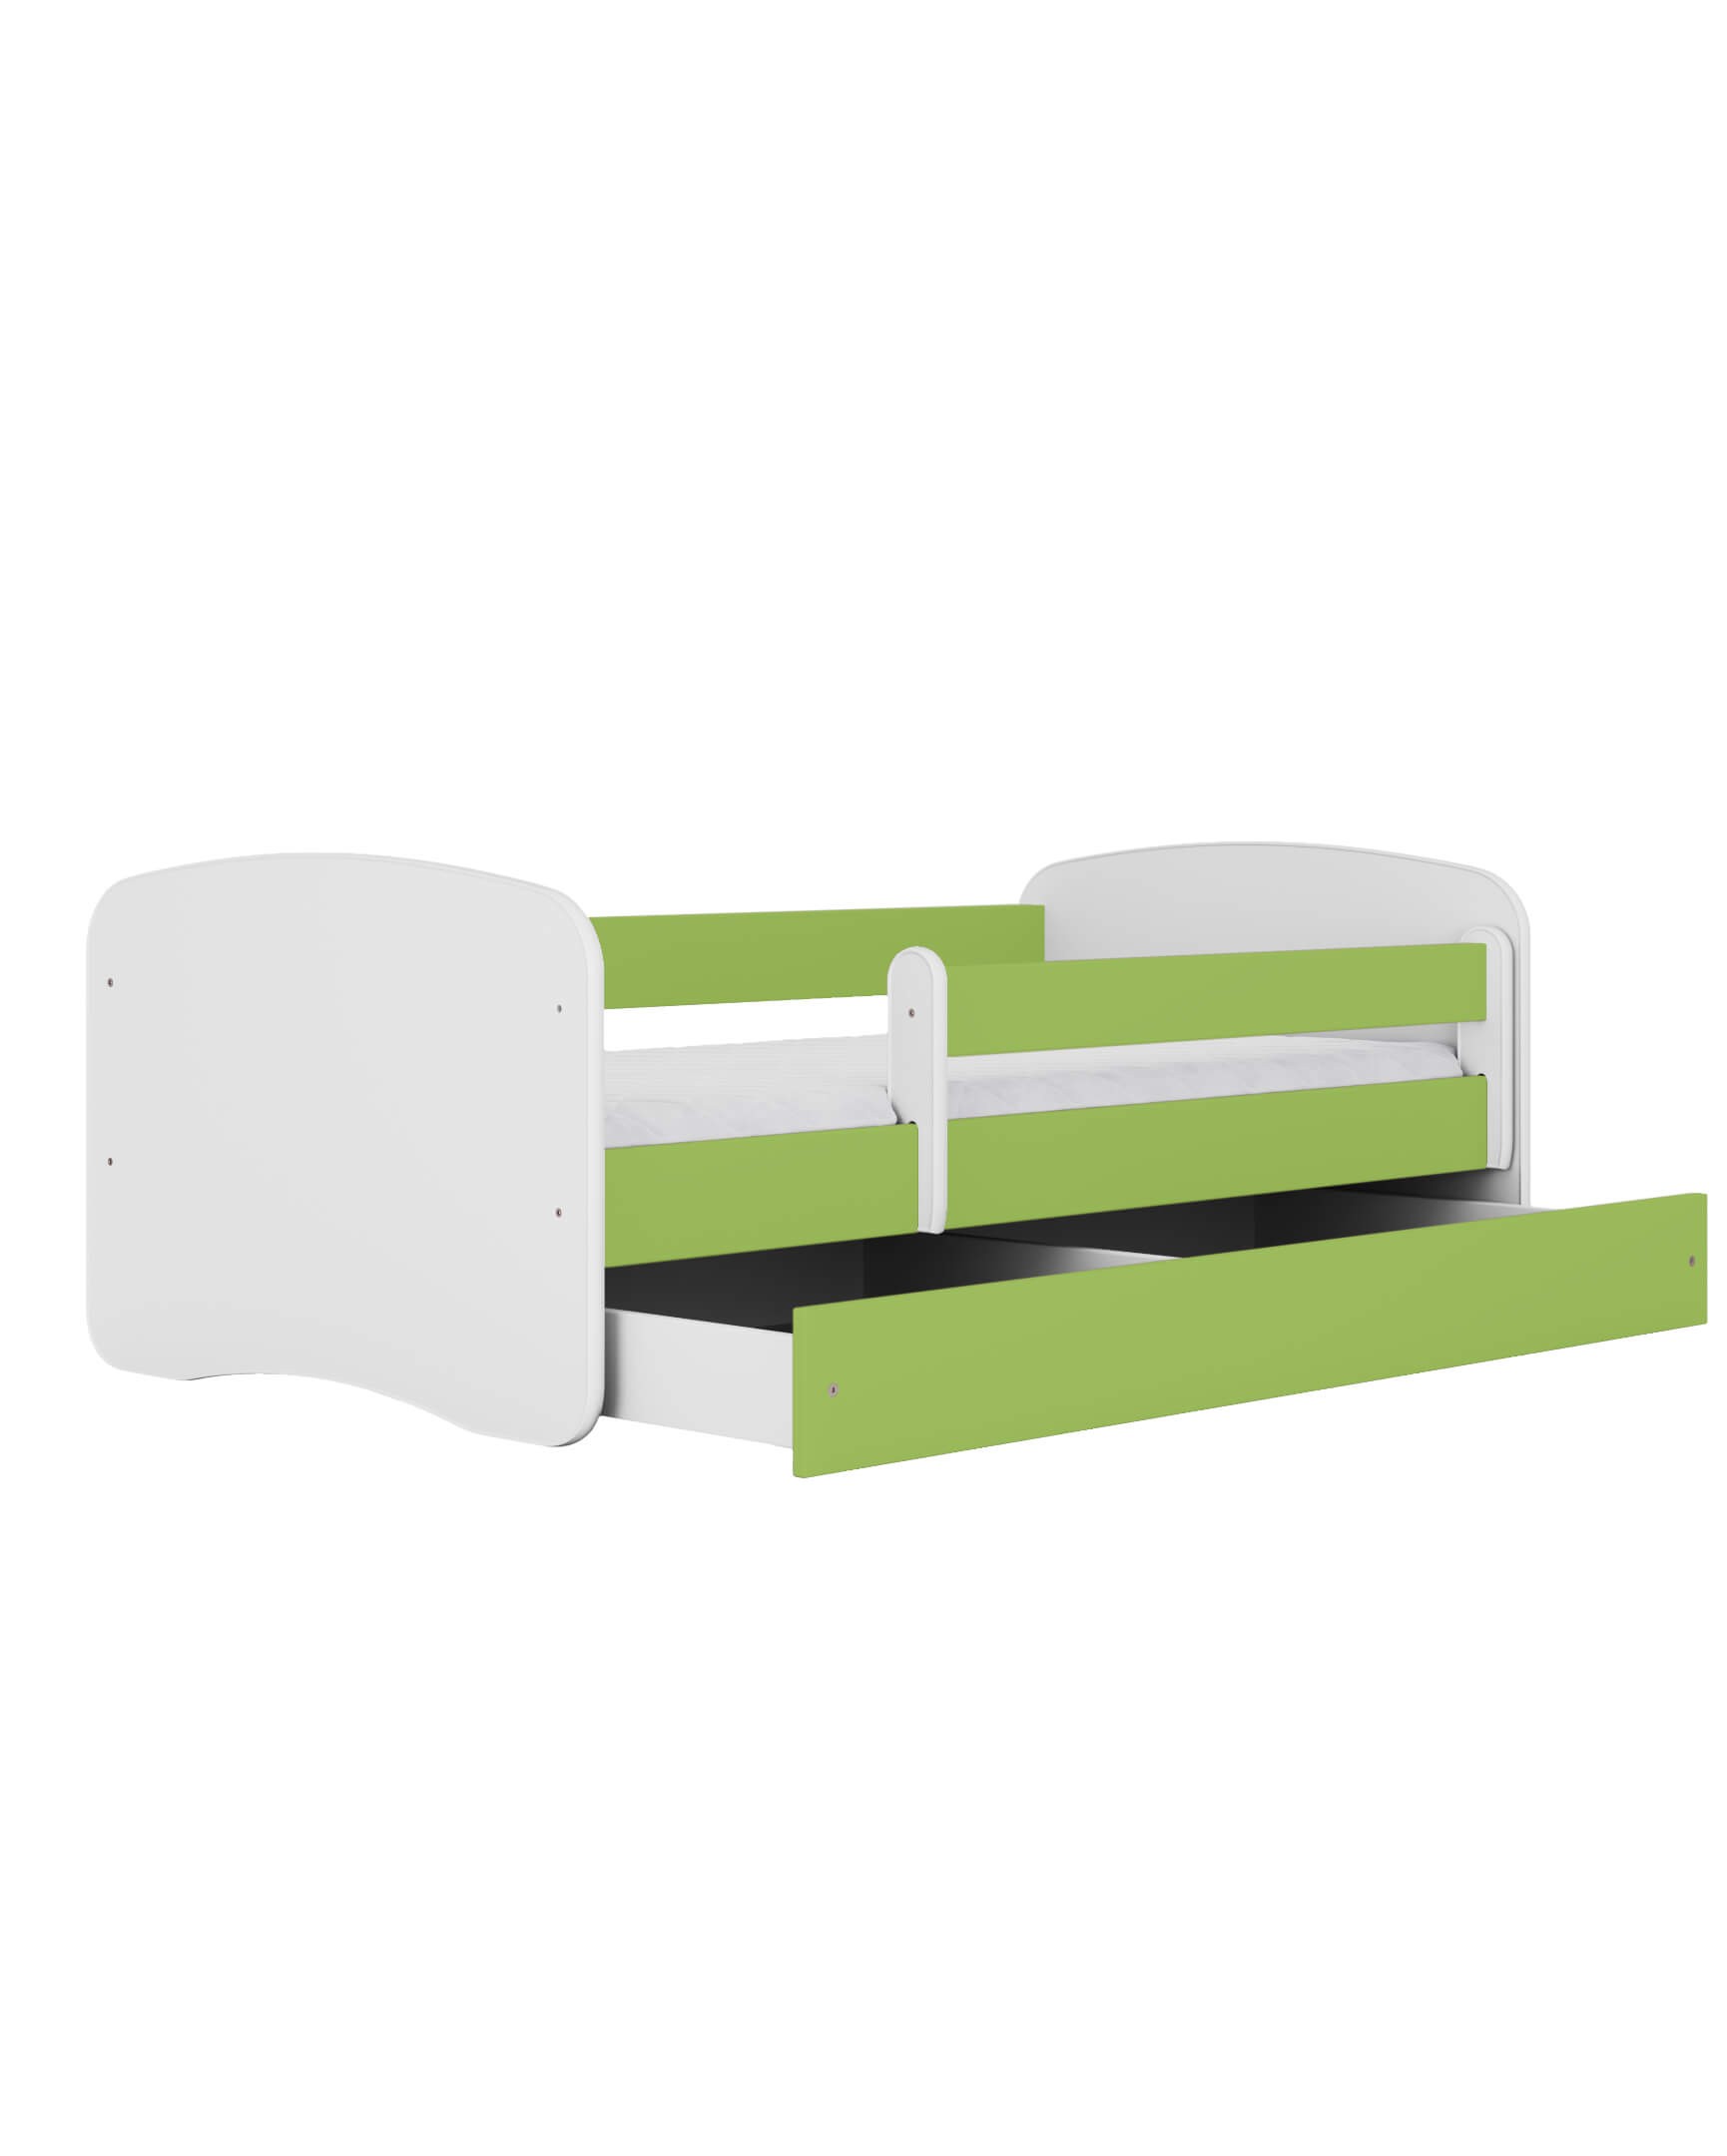 Dodatki w kolorze: zielonym/łóżko